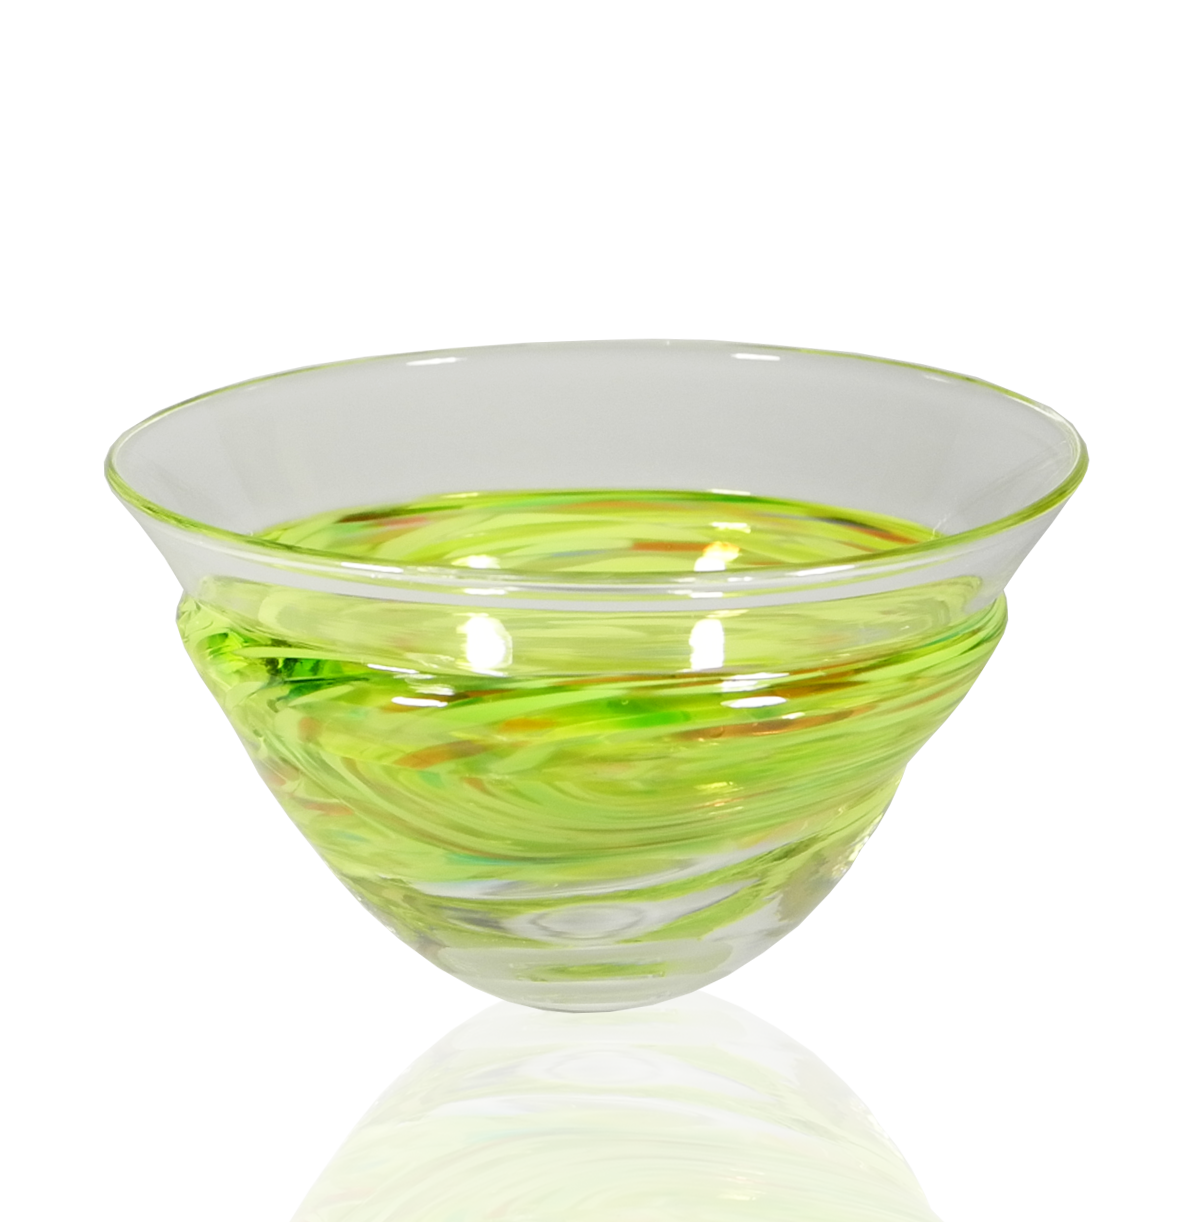 Wrap Bowls - Glass Art - Kingston Glass Studio - Blown Glass - Glass Blowing